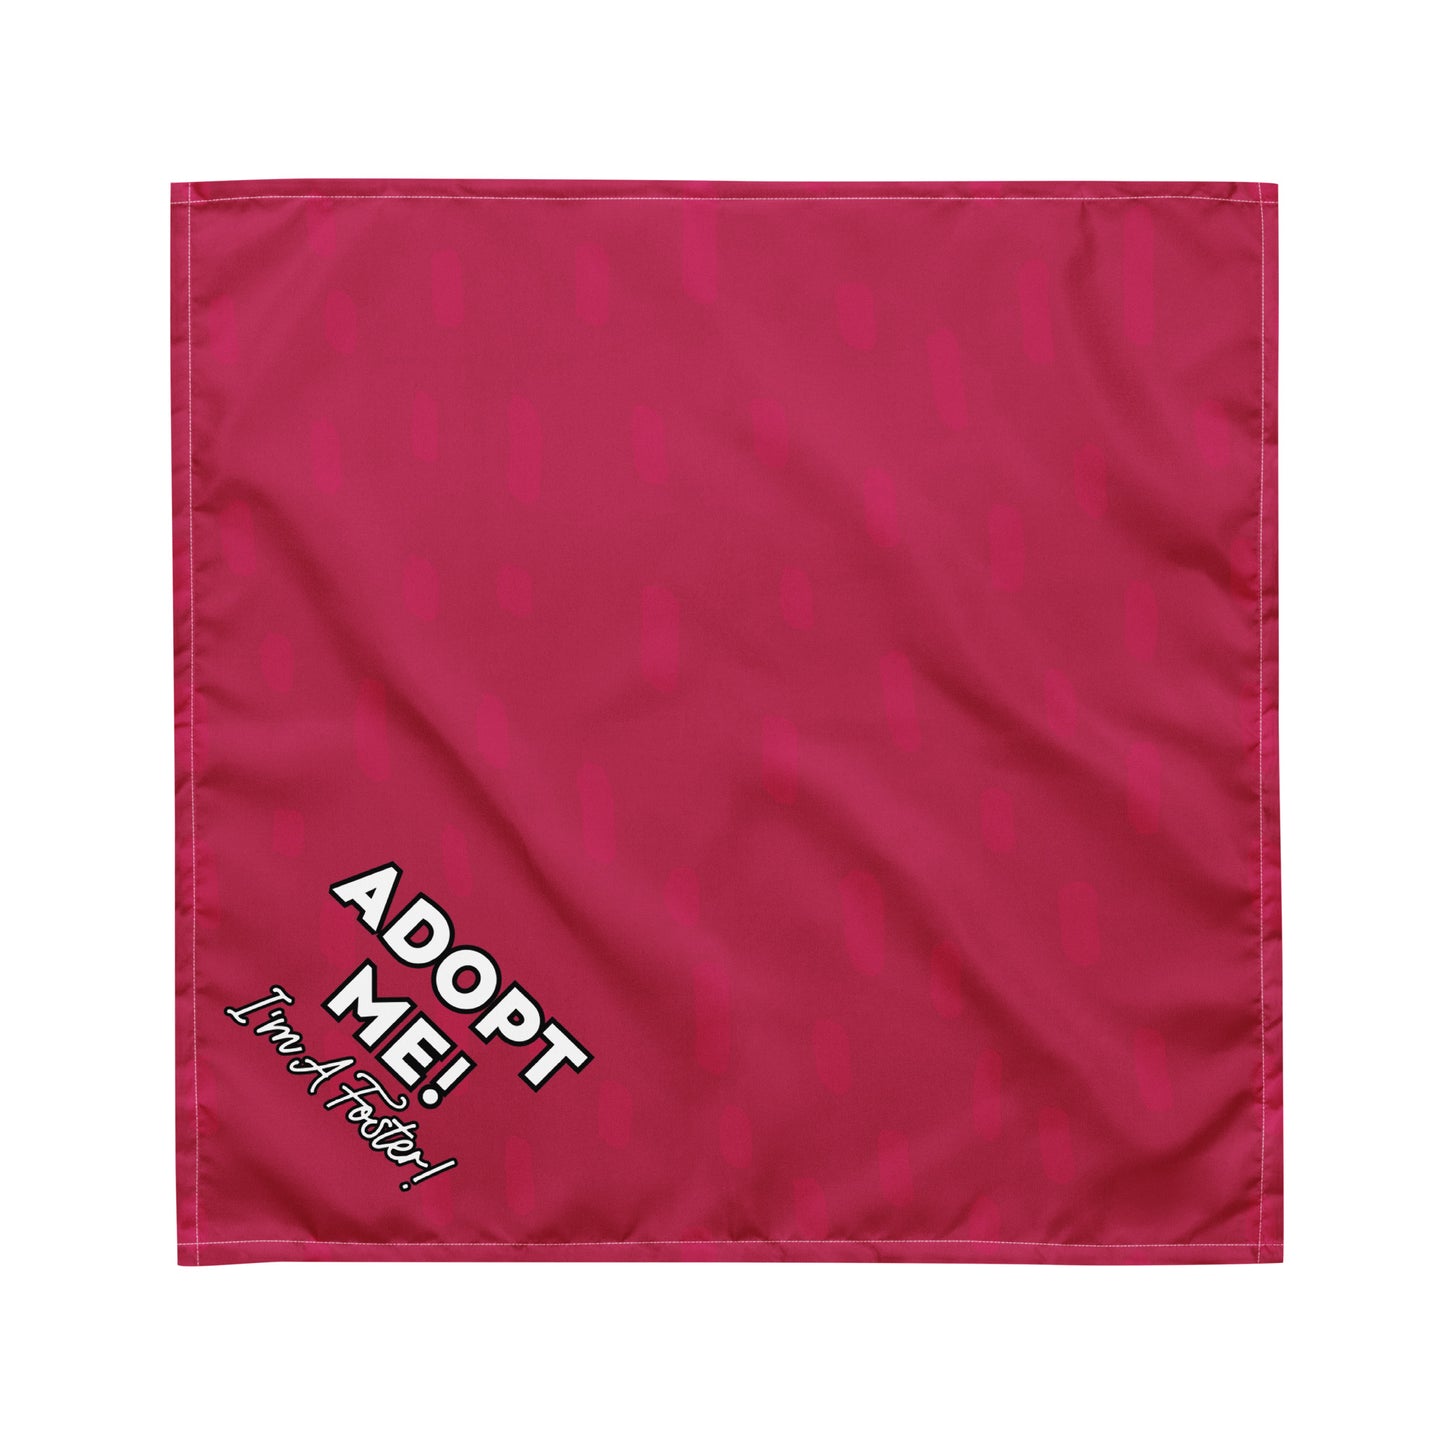 "Adopt Me" Pink Dog Bandana